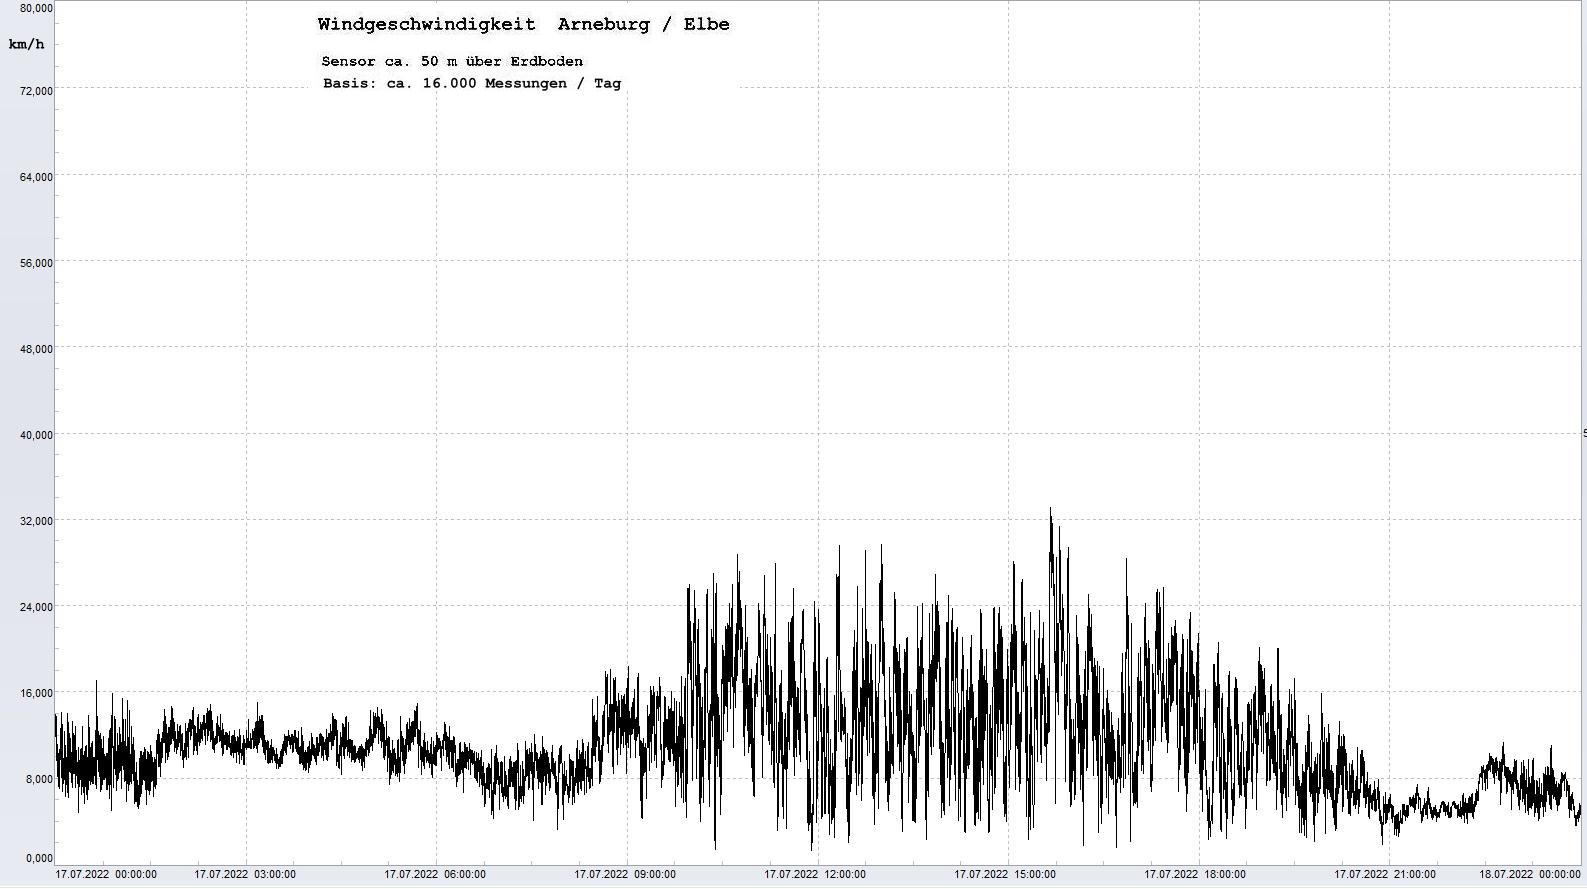 Arneburg Tages-Diagramm Winddaten, 17.07.2022
  Diagramm, Sensor auf Gebude, ca. 50 m ber Erdboden, Basis: 5s-Aufzeichnung